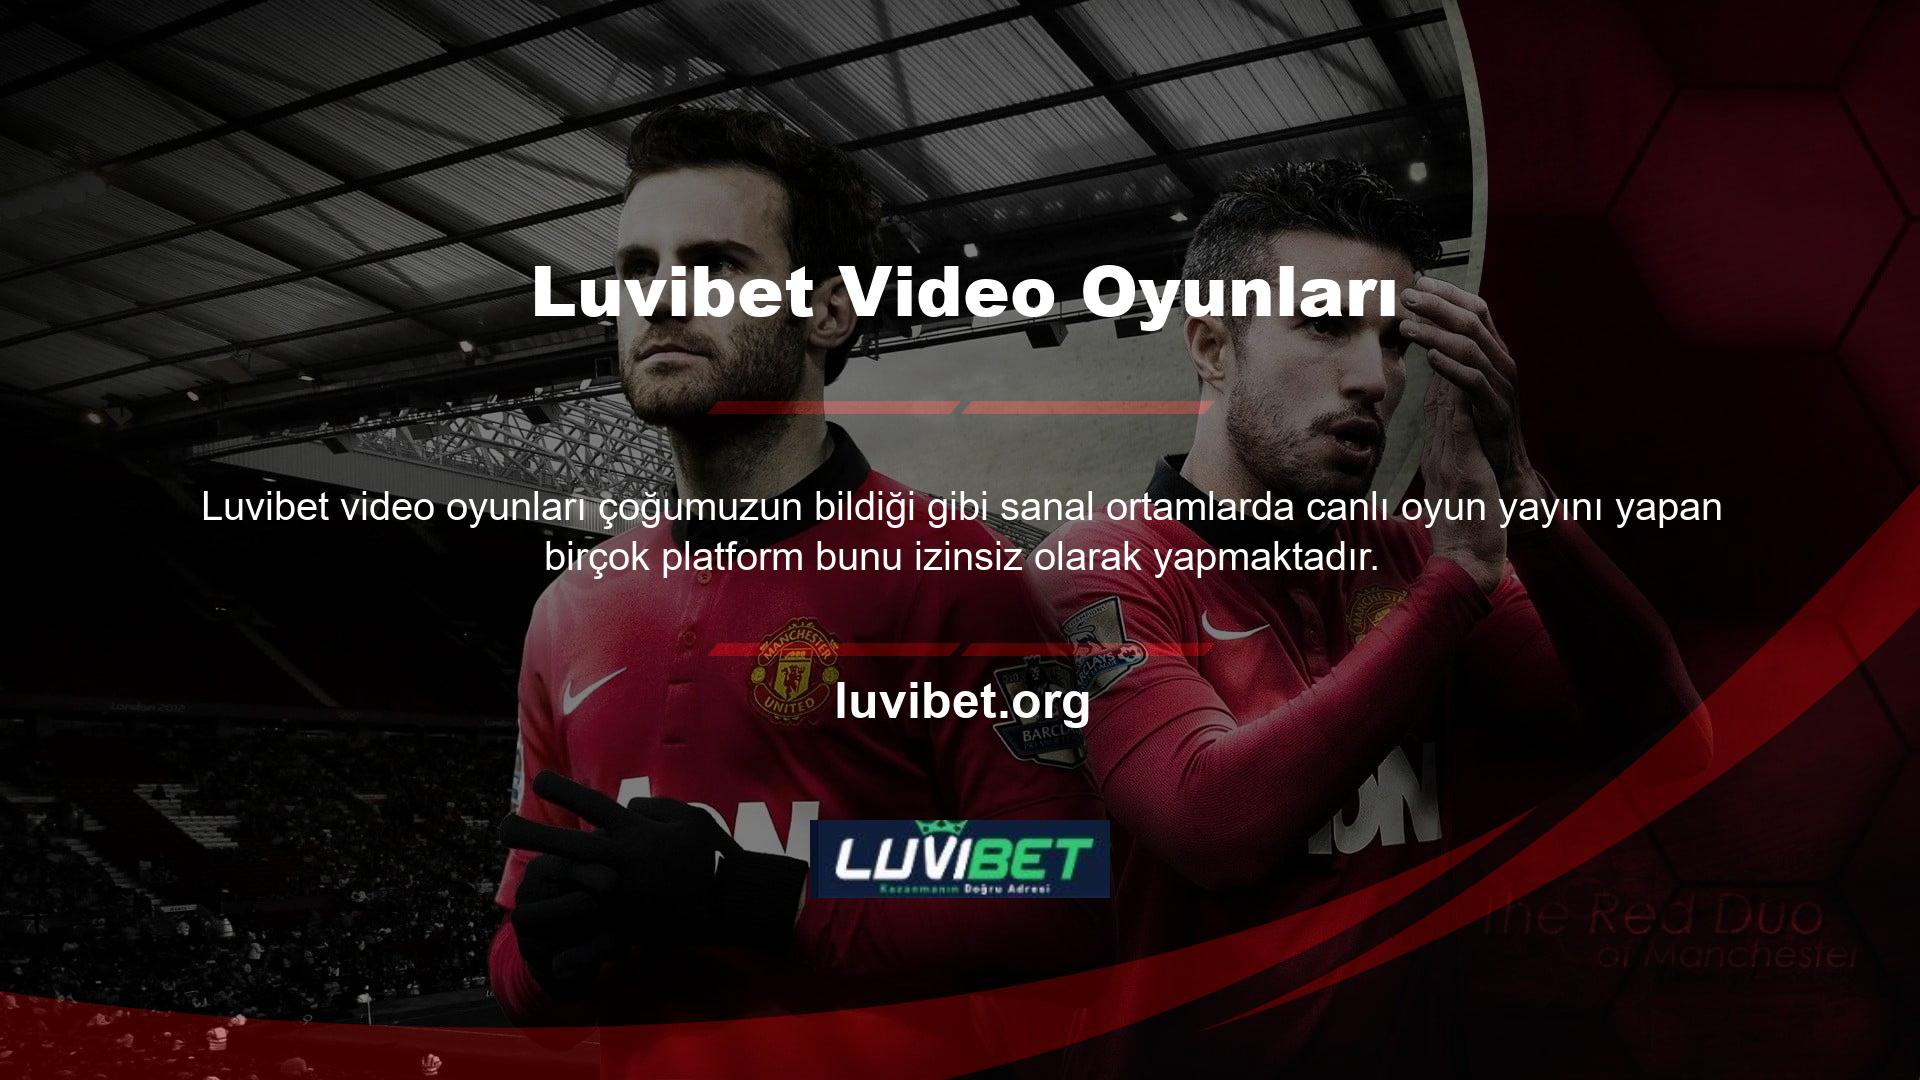 Luvibet TV'nin ne yazık ki resmi bir kanal sertifikası bulunmamaktadır